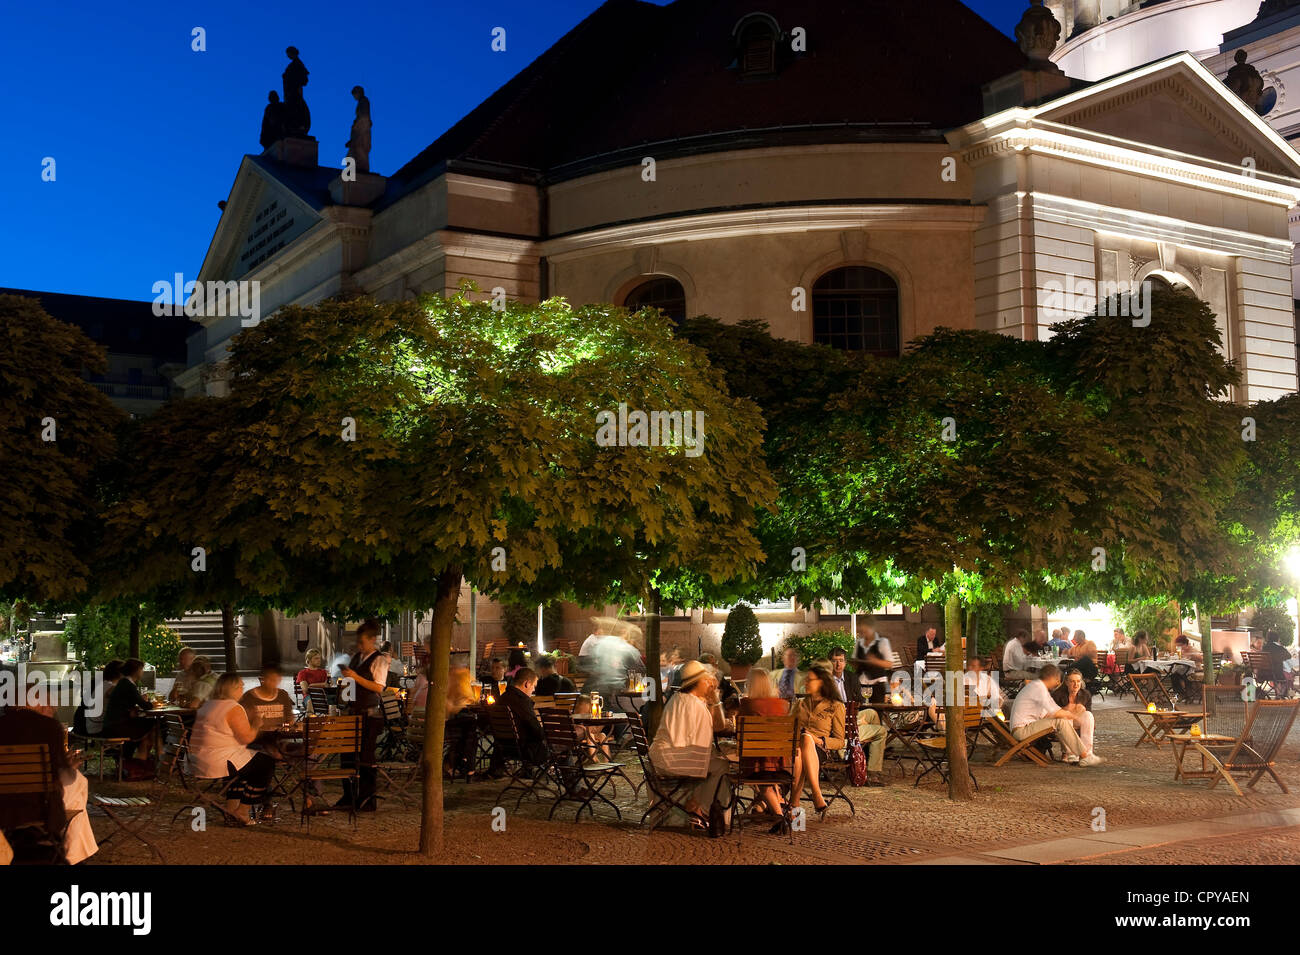 Germany, Berlin, Mitte District, Gendarmenmarkt, Cafe terrace Stock Photo